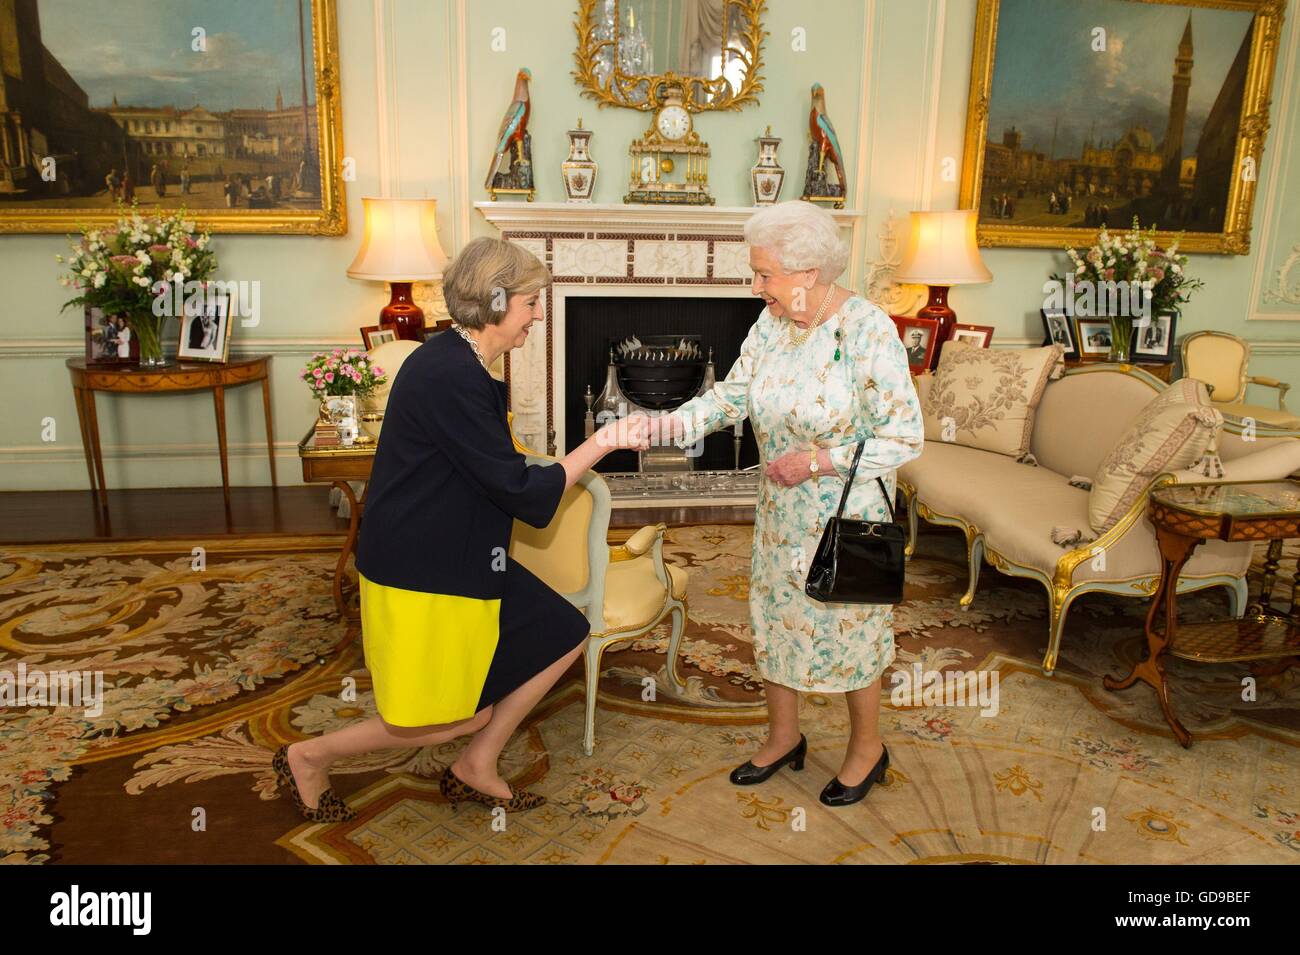 Queen Elizabeth II accoglie favorevolmente Theresa Maggio all'inizio di un pubblico in Buckingham Palace di Londra, dove ha invitato l'ex Segretario di casa di diventare Primo Ministro e formare un nuovo governo. Foto Stock